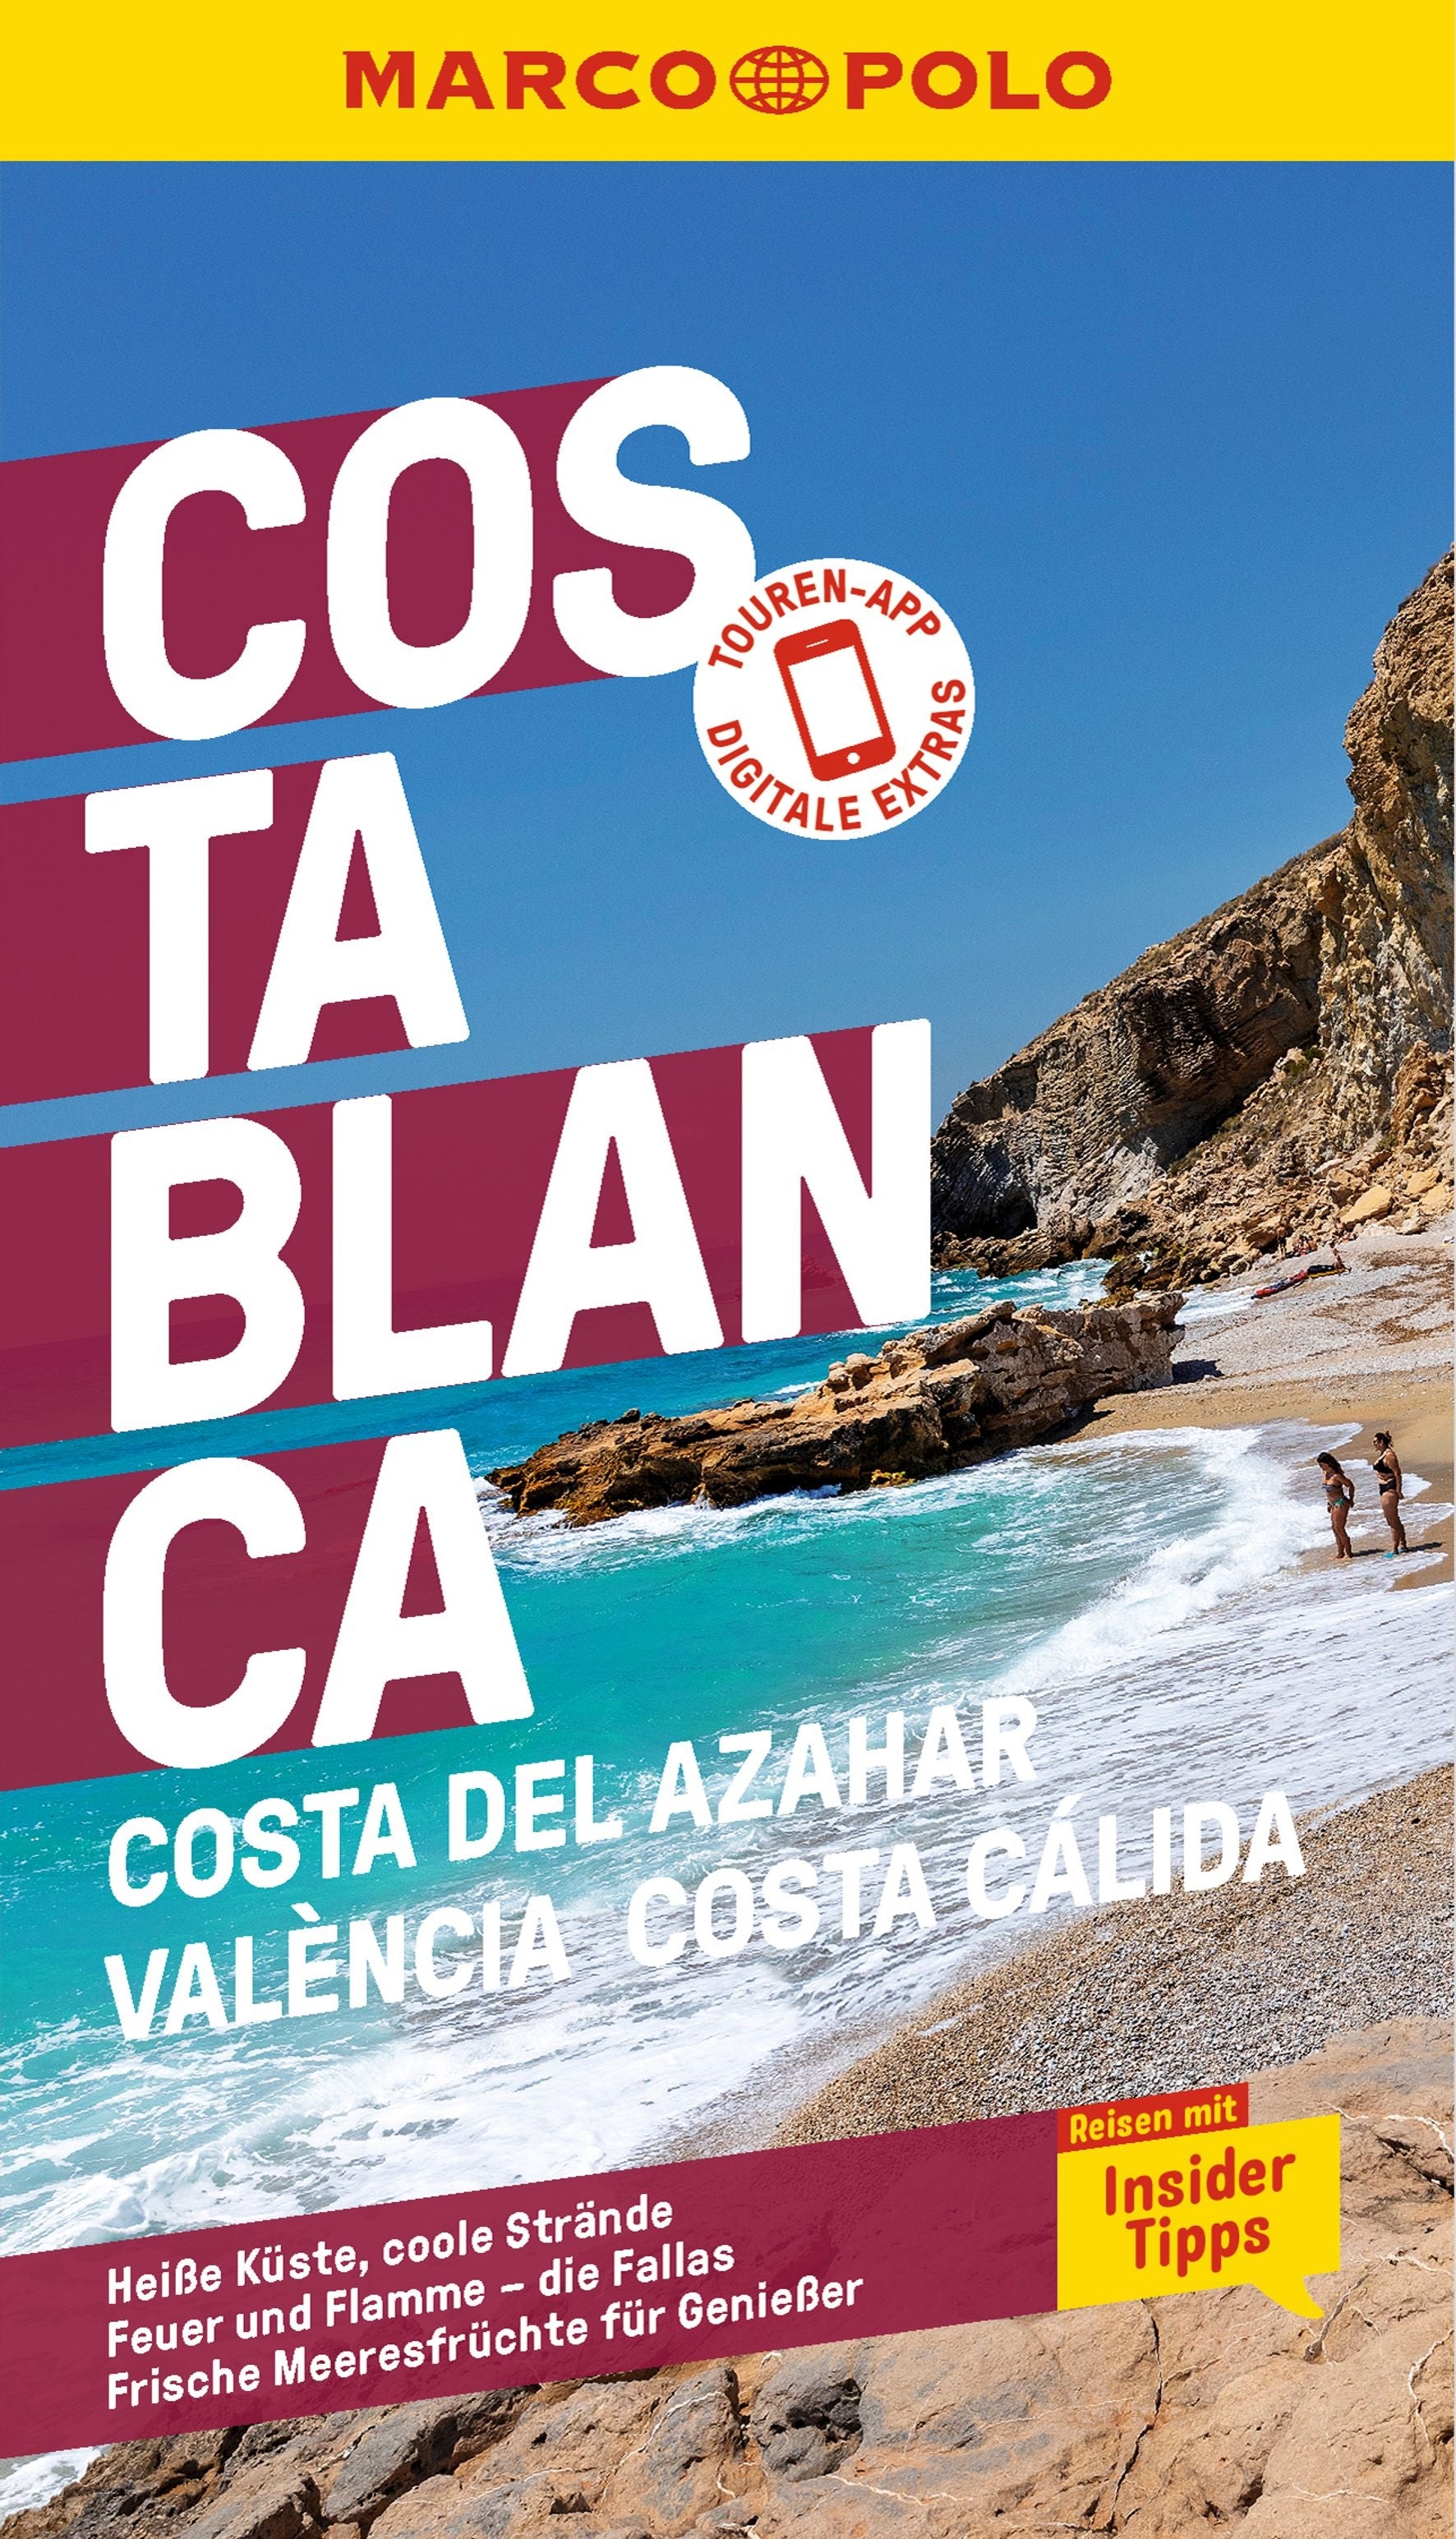 Costa Blanca, Costa del Azahar, València, Costa Cálida - MARCO POLO Reiseführer